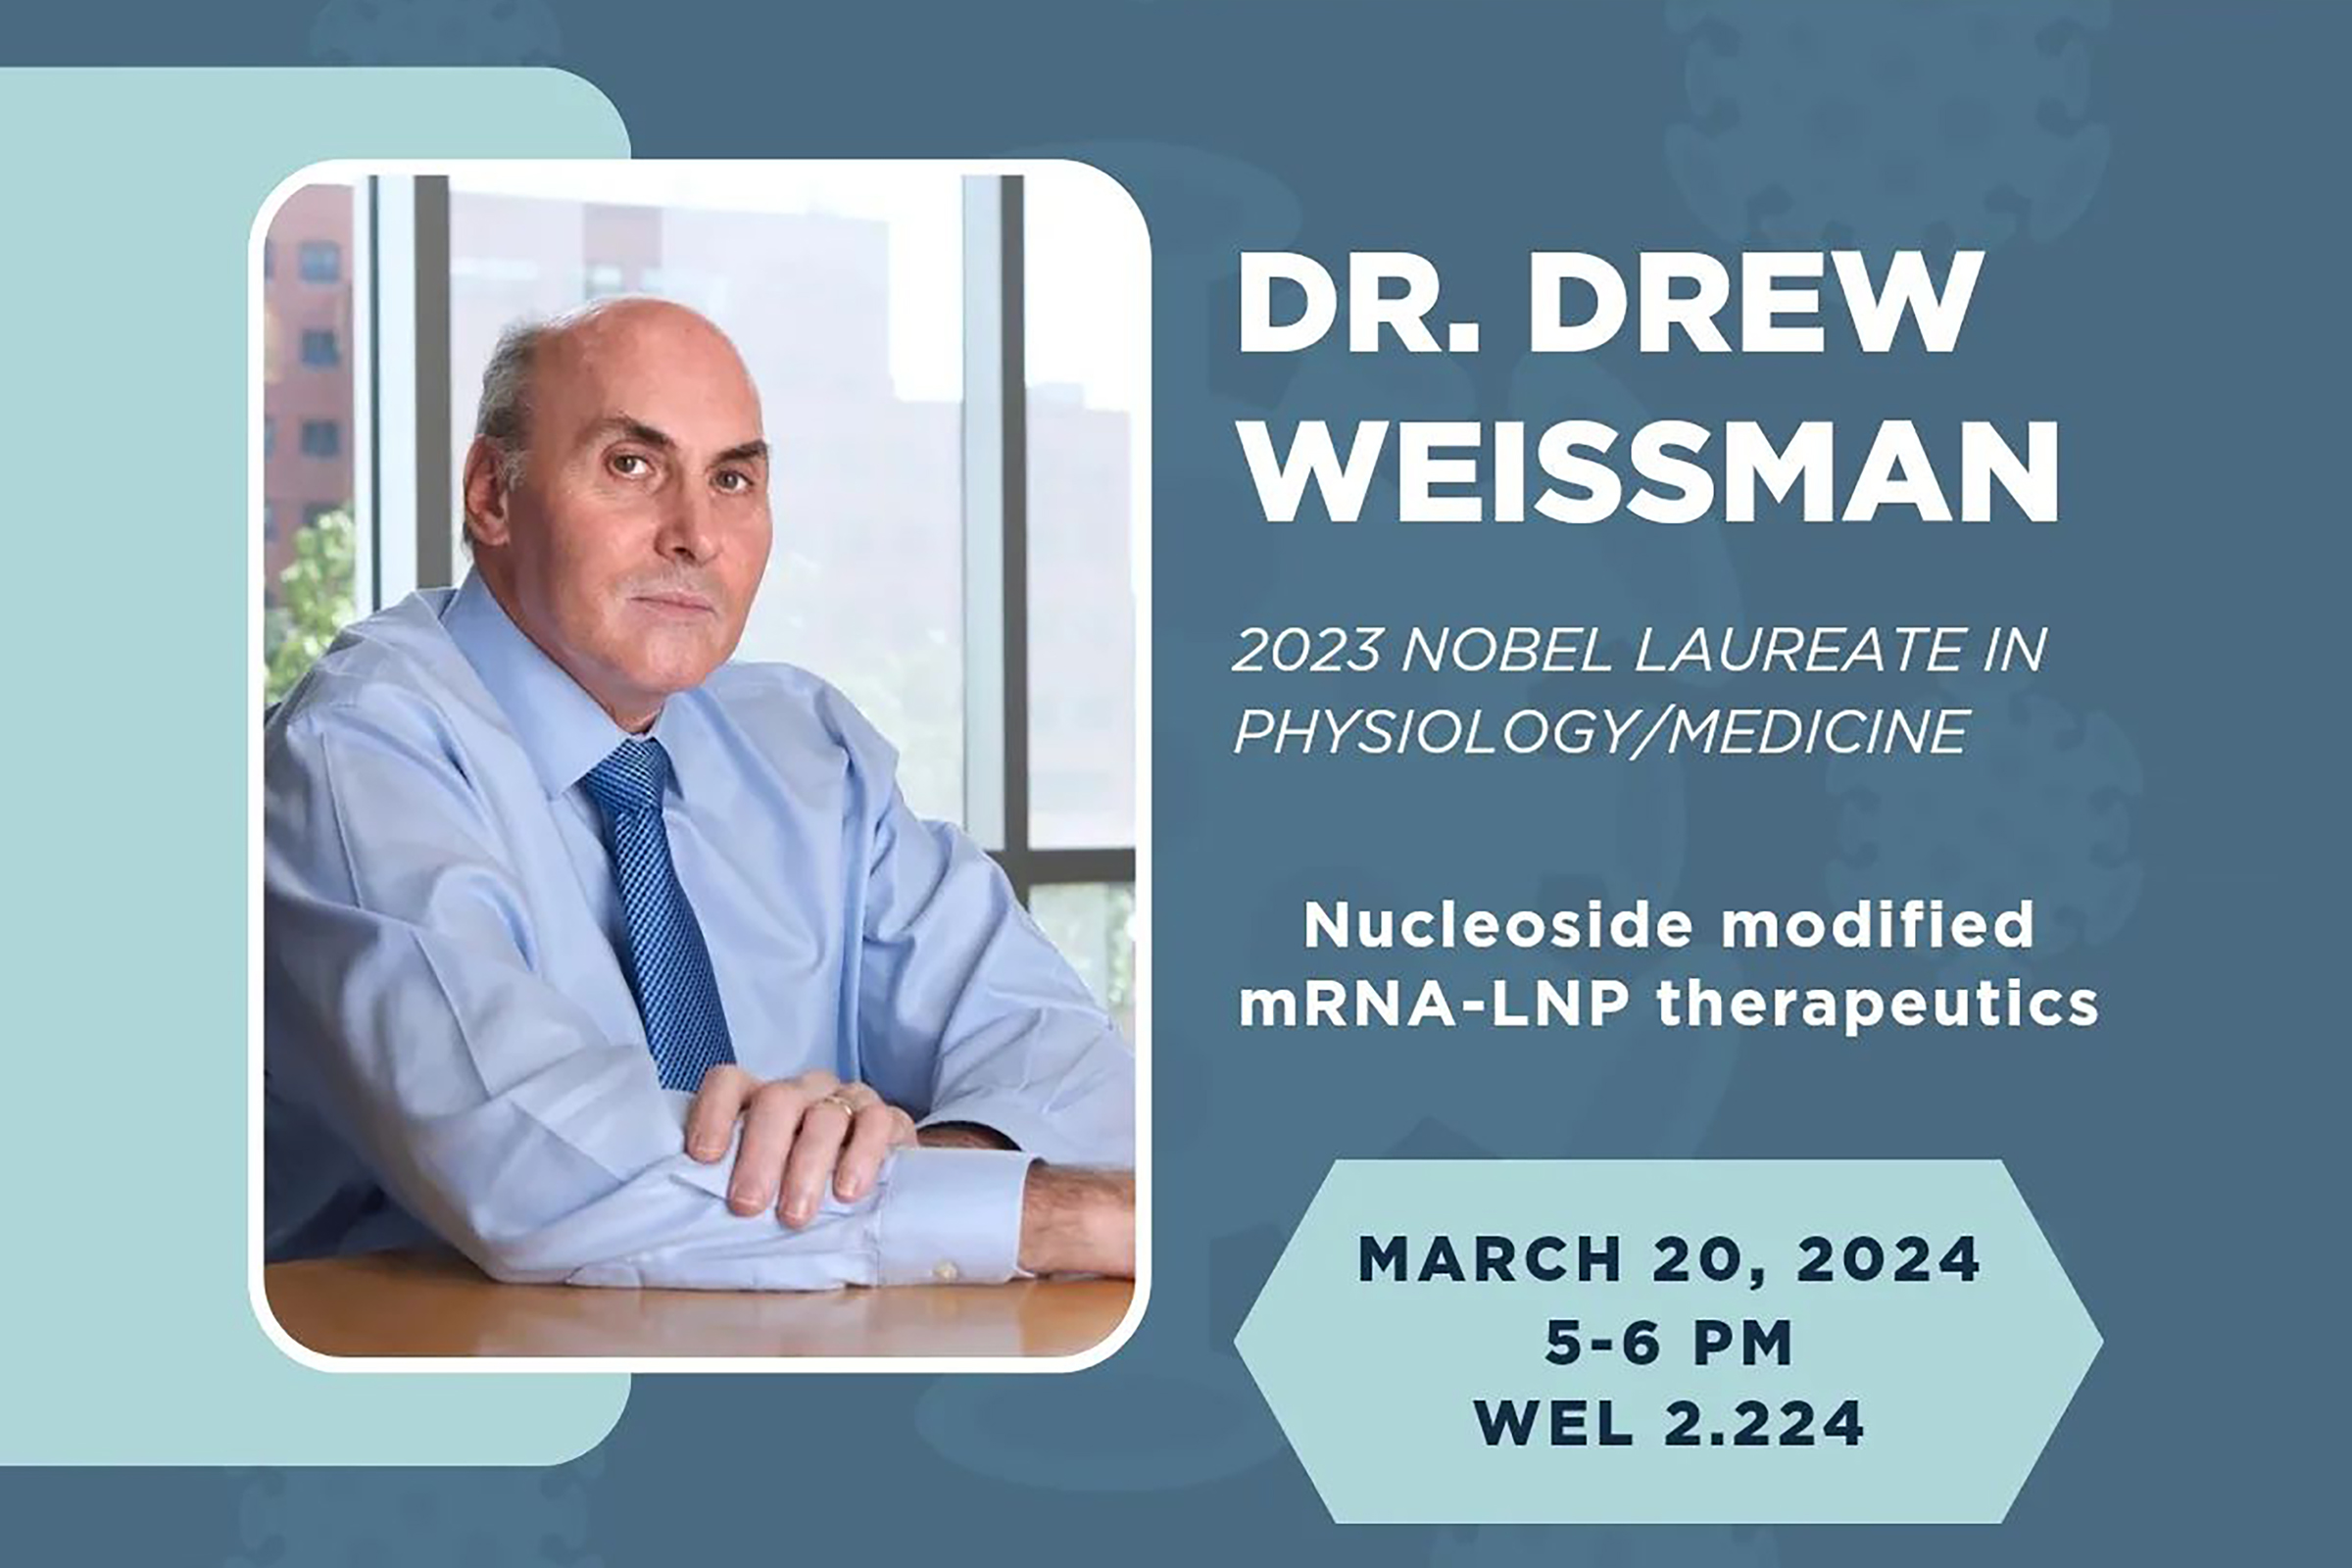 Dr. Drew Weissman